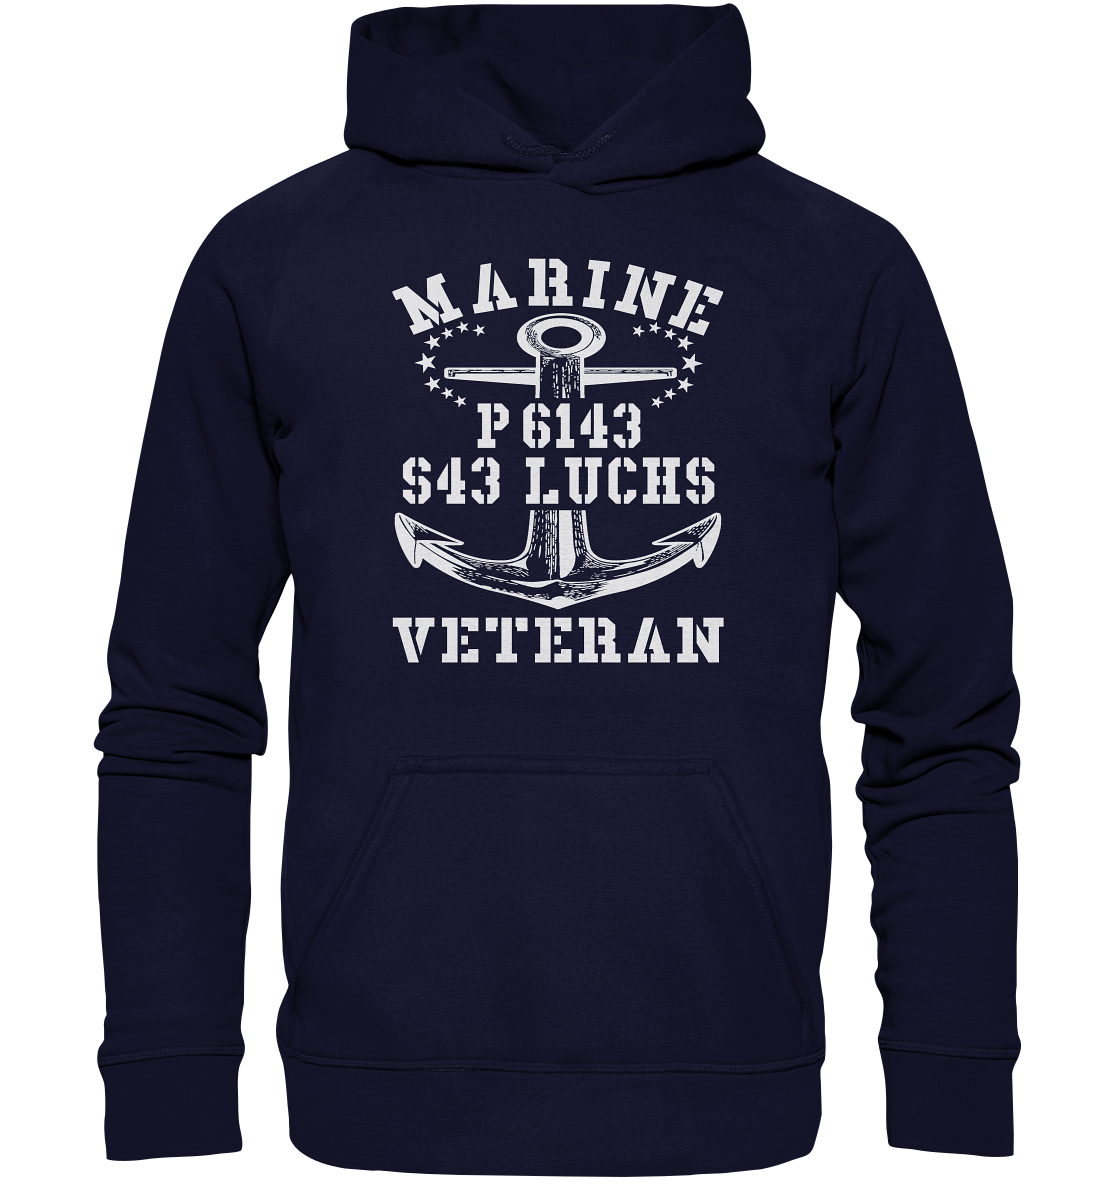 P6143 S43 LUCHS Marine Veteran - Basic Unisex Hoodie